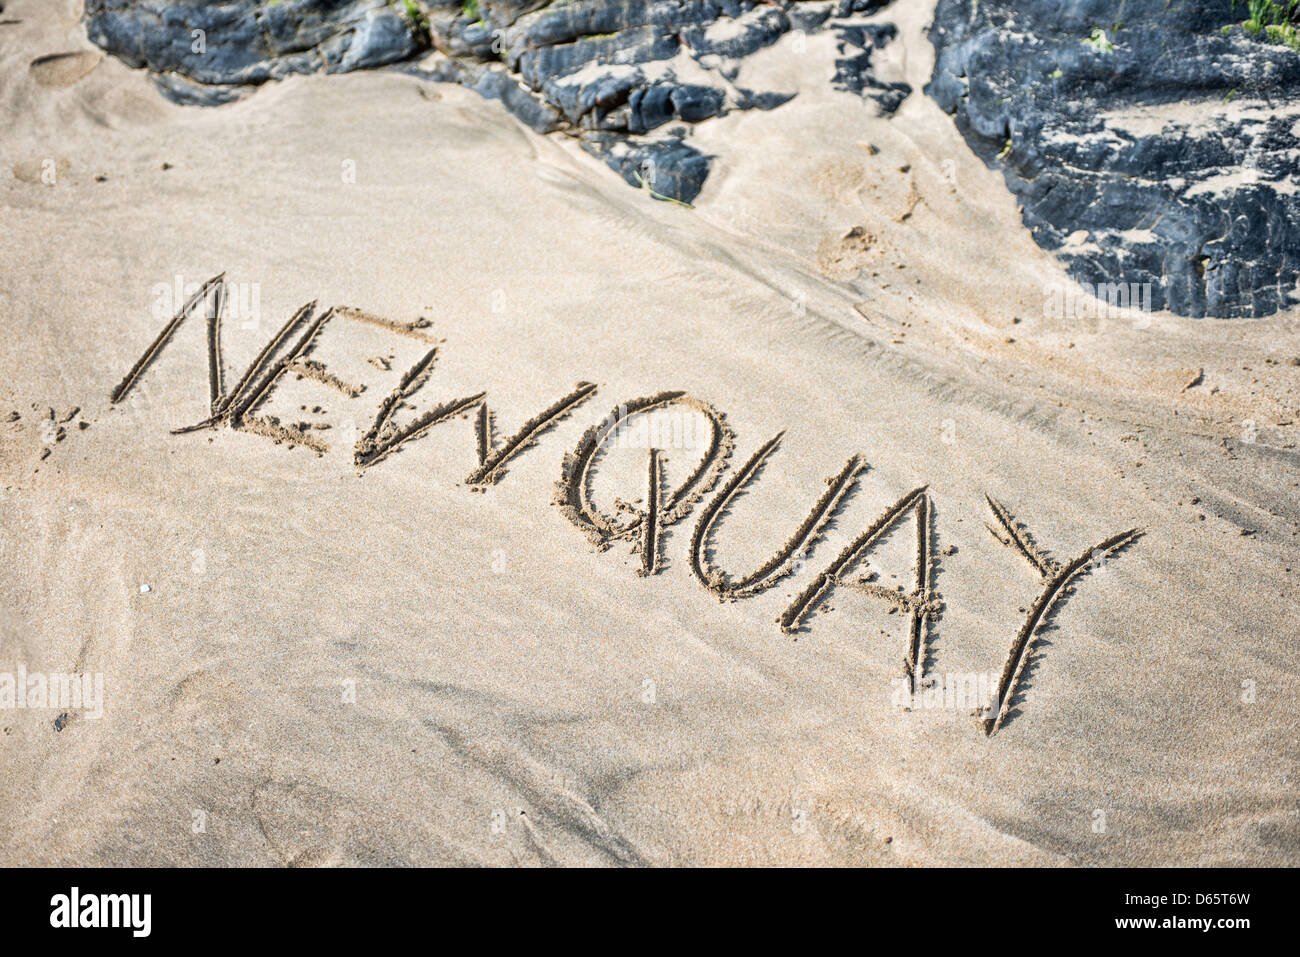 Das Wort Newquay geschrieben im Sand am Strand Stockfoto